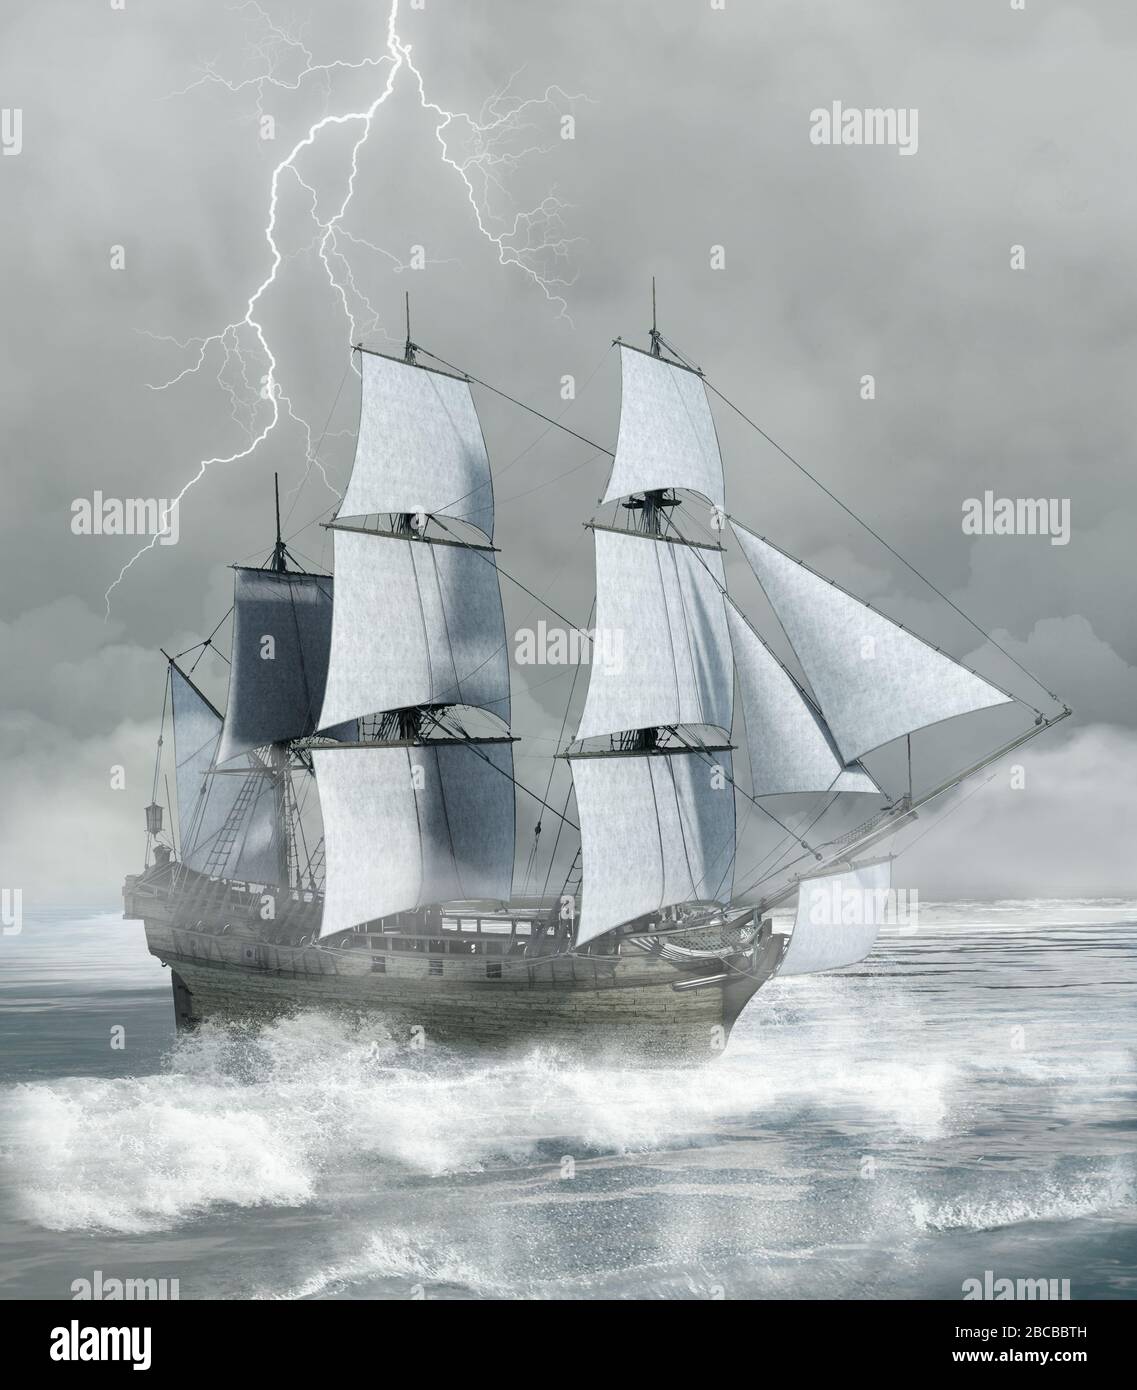 Paysage marin avec un bateau face à une mer ondulée dans une tempête furieuse Banque D'Images